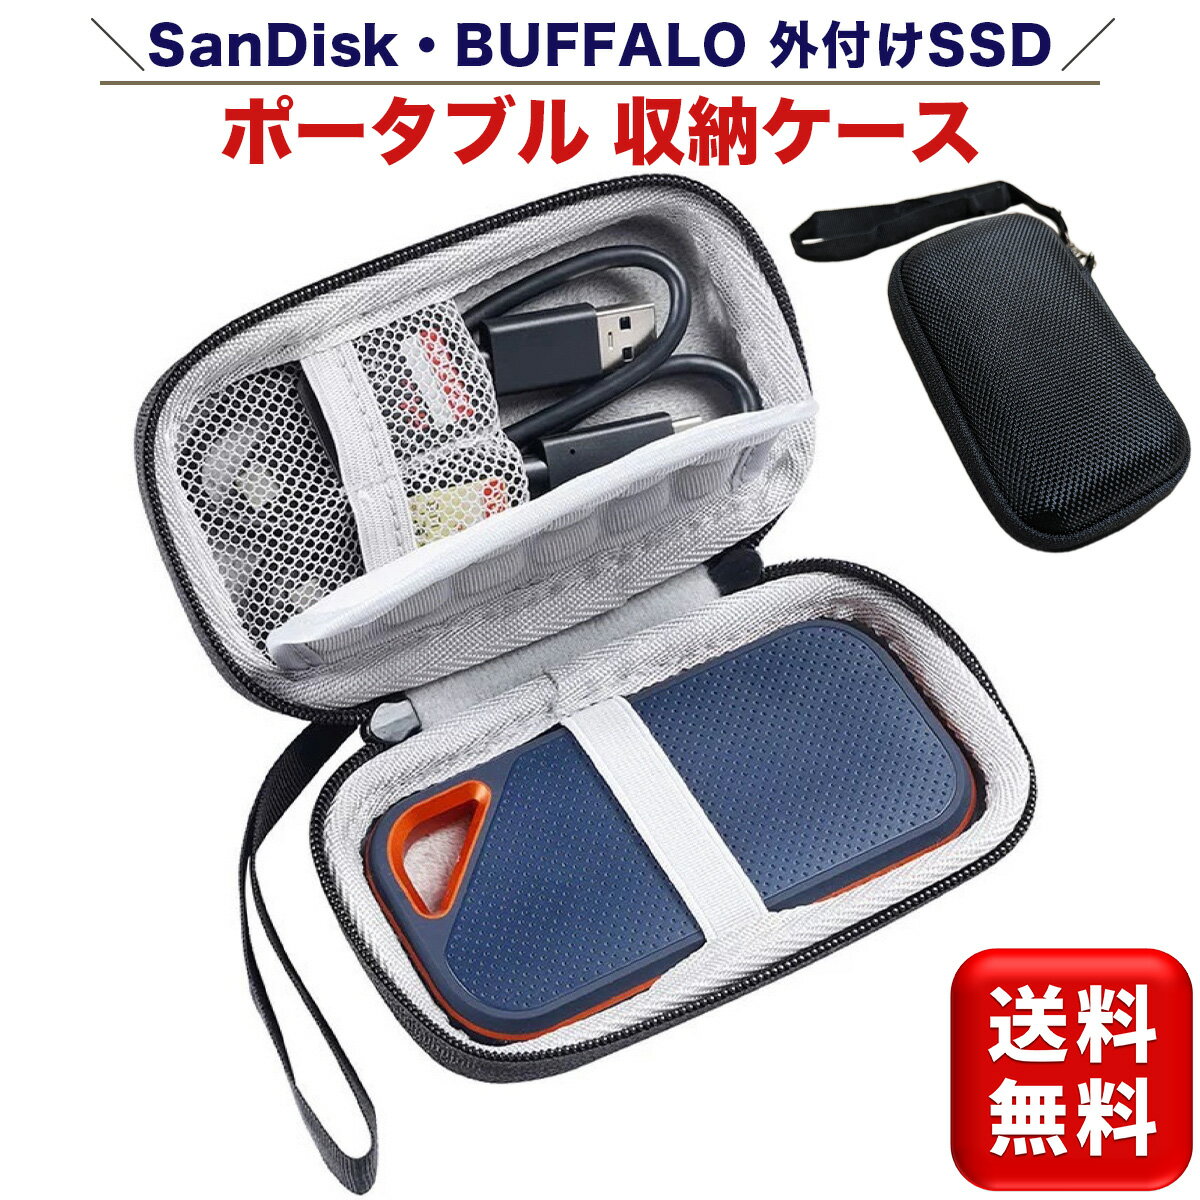 SSD収納ケース 耐衝撃 外付けSSD ポータブルSSD 保護ケース SSDケース 収納 SanDisk サンディスク BUFFALO バッファロー 1TB 2TB 500GB 250GB ストラップ付き セミハード 送料無料